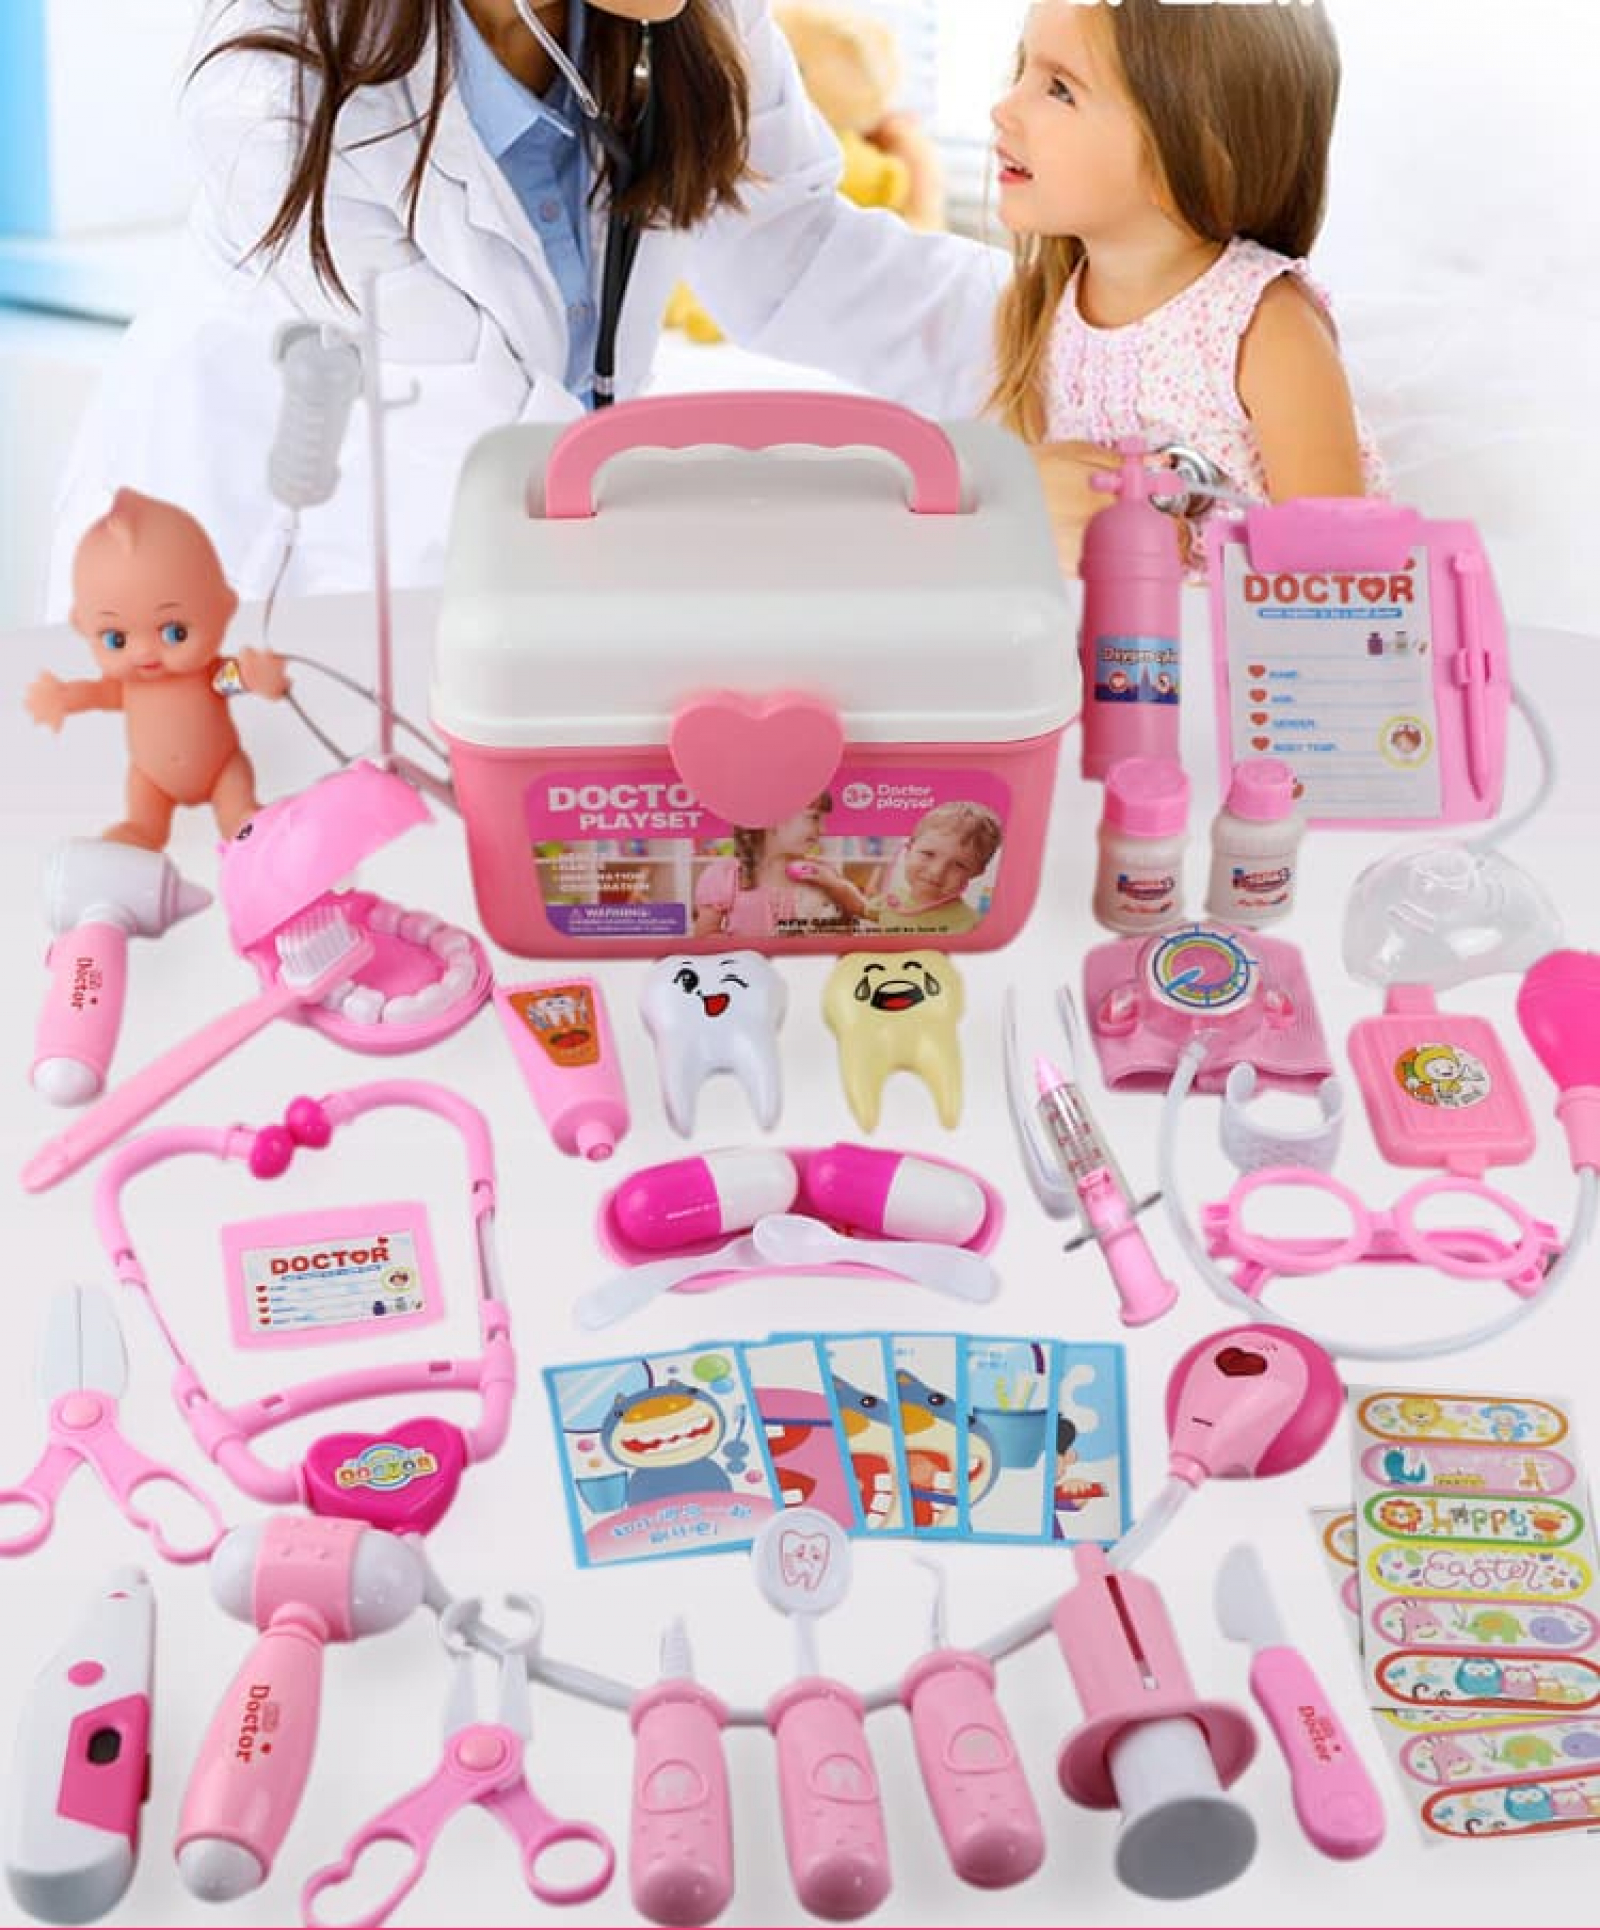 Chuyên bán bộ đồ chơi bác sĩ màu hồng vali kéo có xe đẩy nhập khẩu giá rẻ tại tphcm